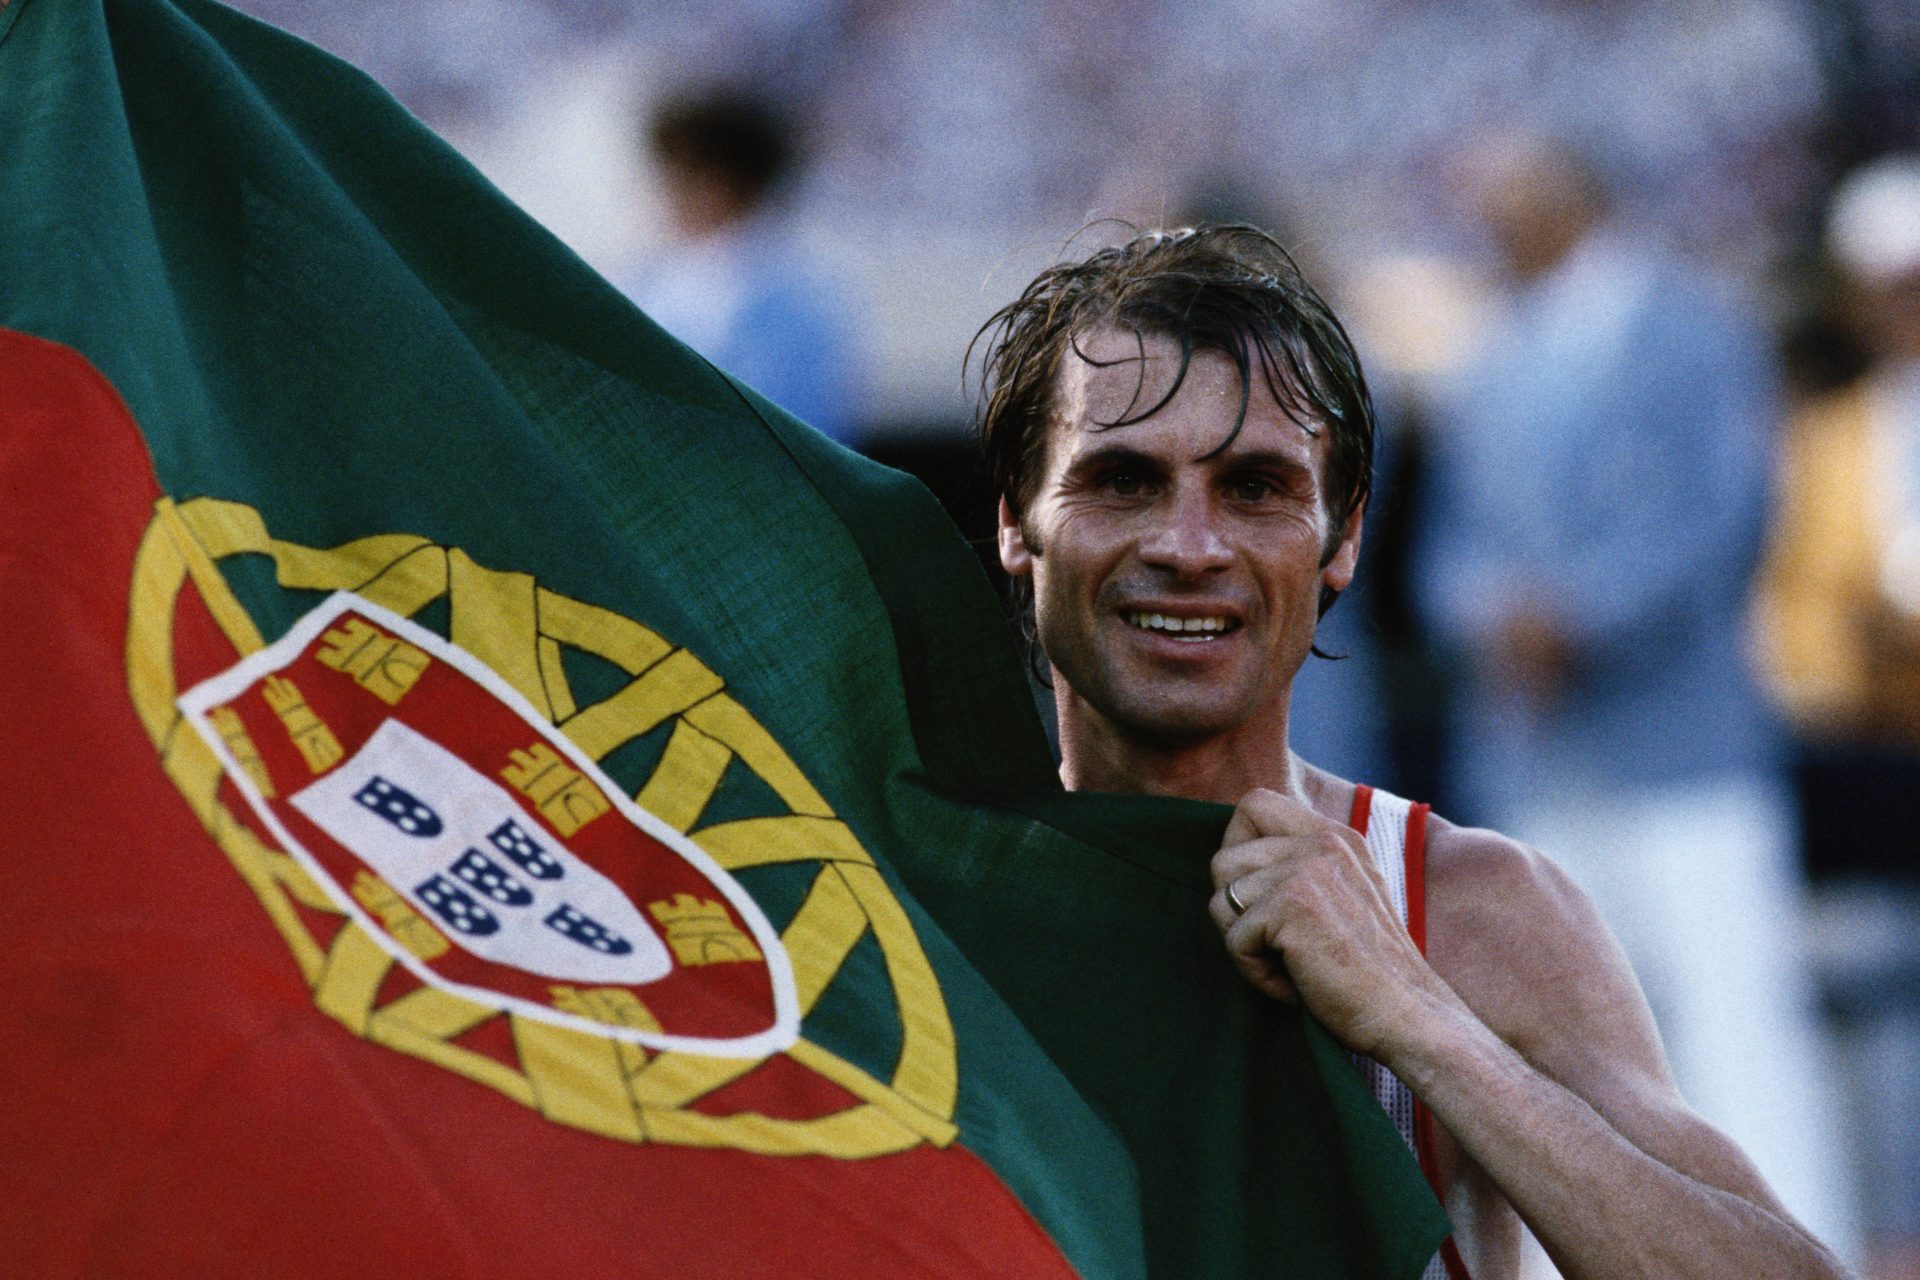 La storia di Carlos Lopes: investito da un'auto 15 giorni prima, vince l'oro (e batte il record) alle Olimpiadi del 1984